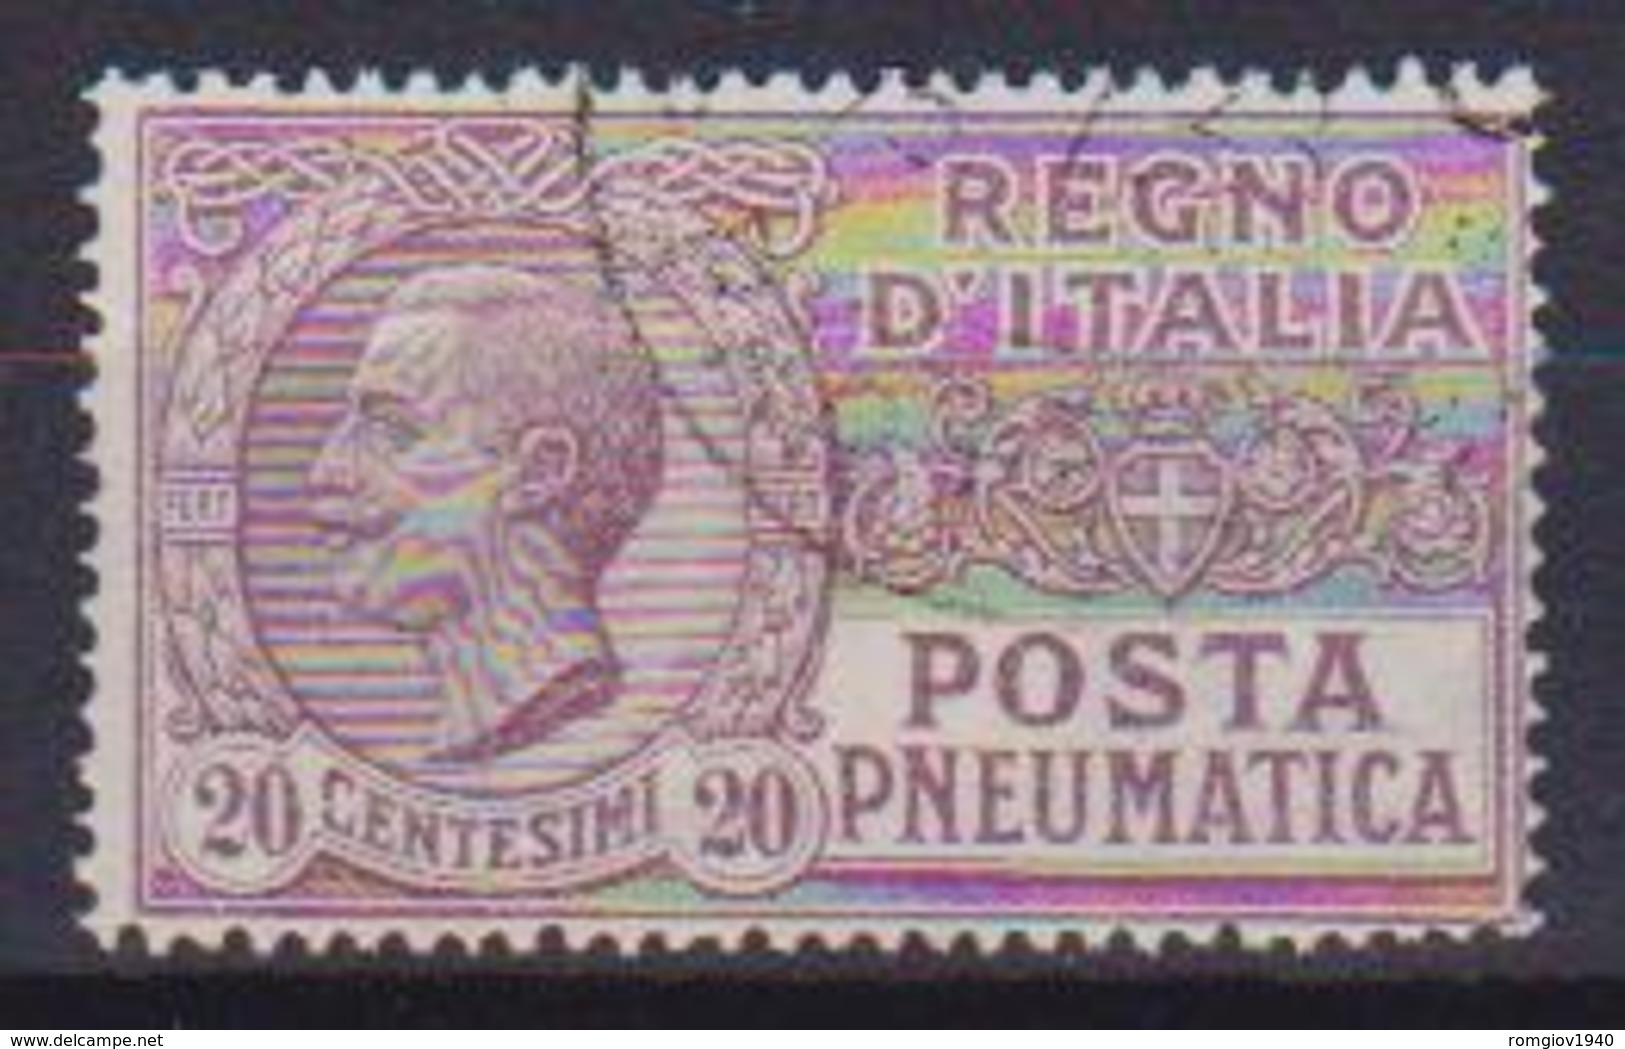 REGNO D'ITALIA POSTA PNEUMATICA 1925  TIPO DEL 1913-23 EFFIGE DI V.EMANUELE III SASS. 8 USATO VF - Poste Pneumatique